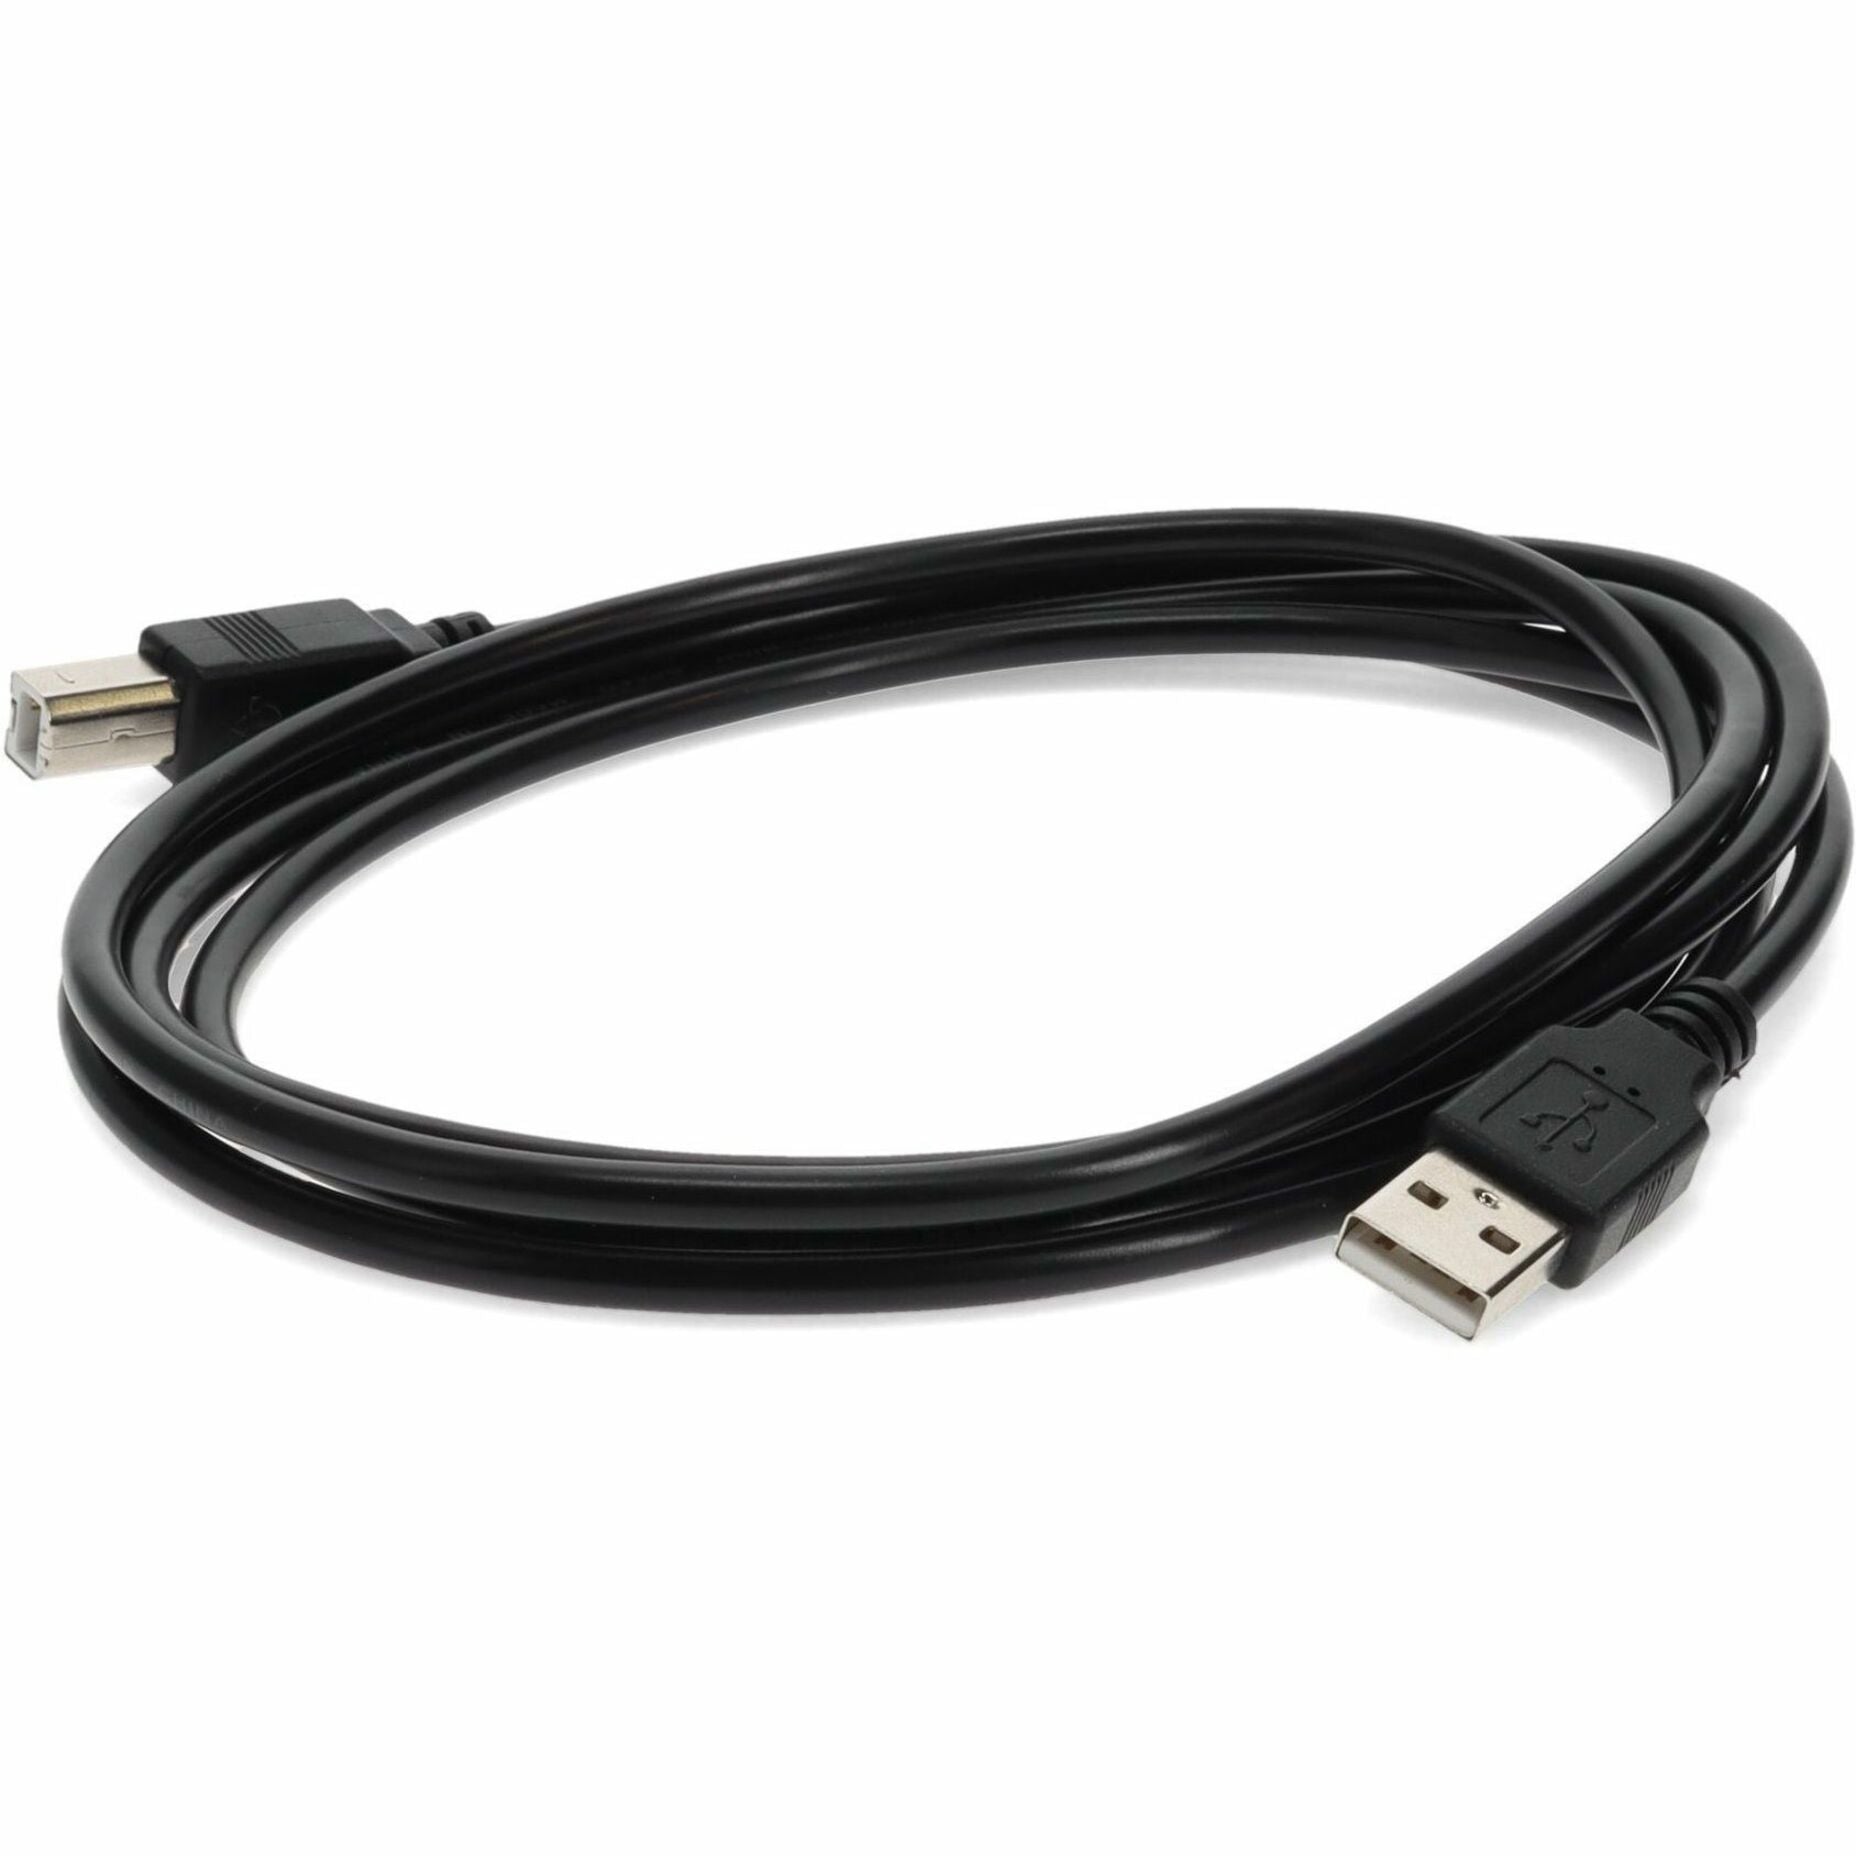 إضافة USBEXTAB6 6ft كابل تمديد USB 2.0 A إلى B - ذكر إلى ذكر، أسود العلامة التجارية: أضف على اسم العلامة التجارية: أضف إلى